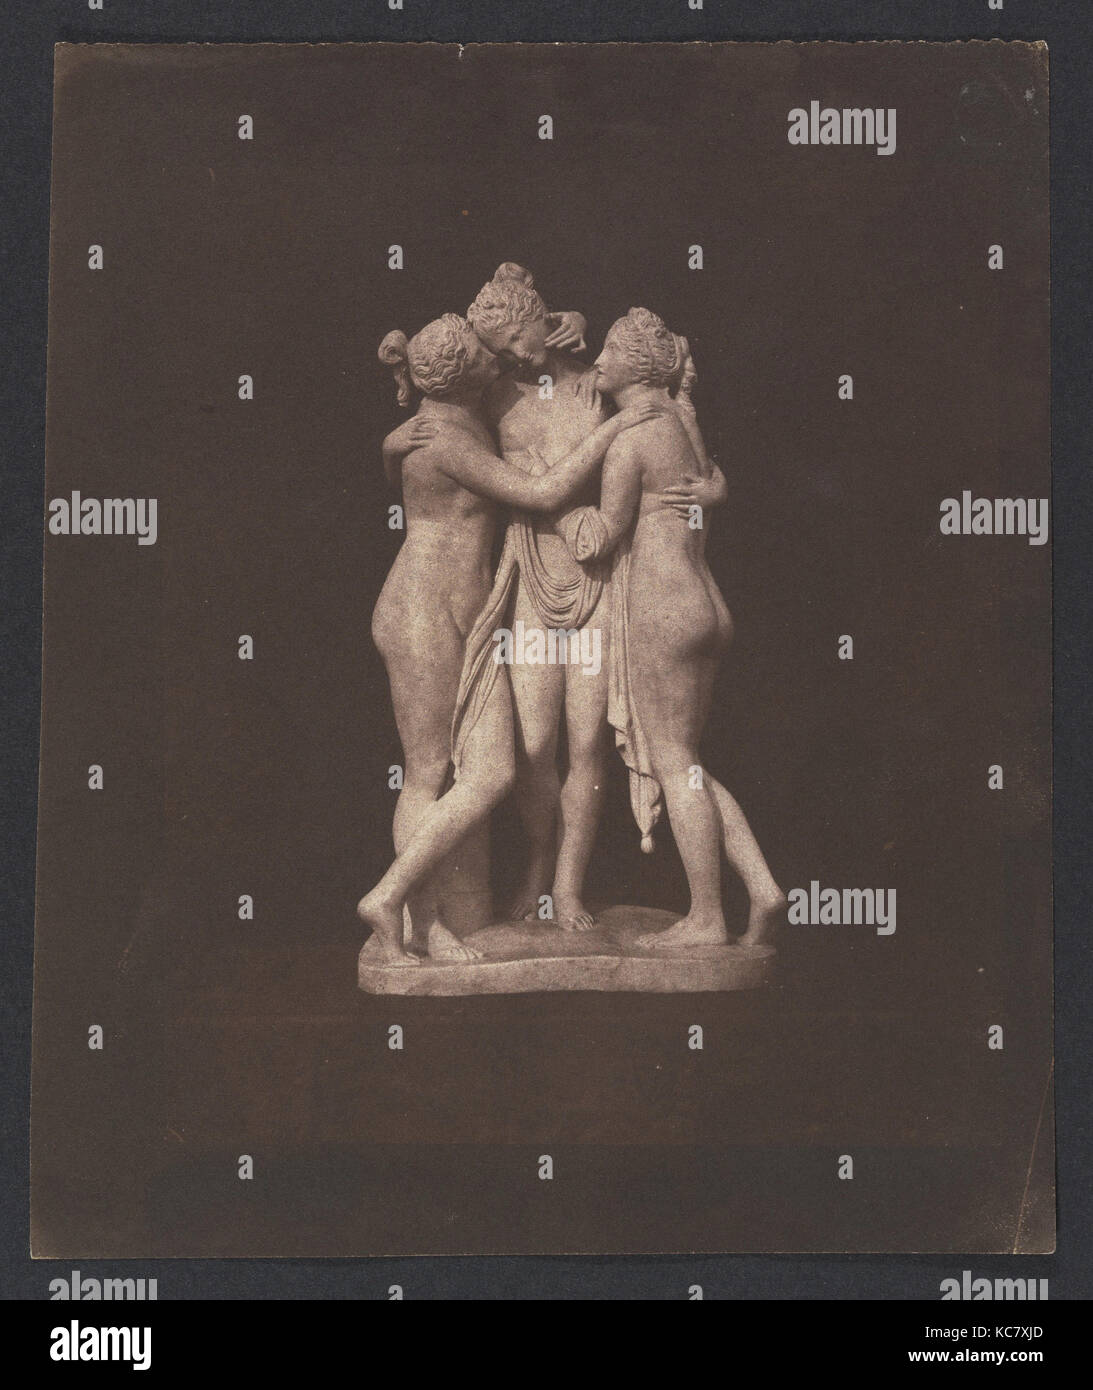 Trois Grâces, 1840, impression sur papier salé à partir de négatifs papier, feuille : 7 × 5/16 6 1/4 in. (18,6 × 15,8 cm), photographies, William Banque D'Images